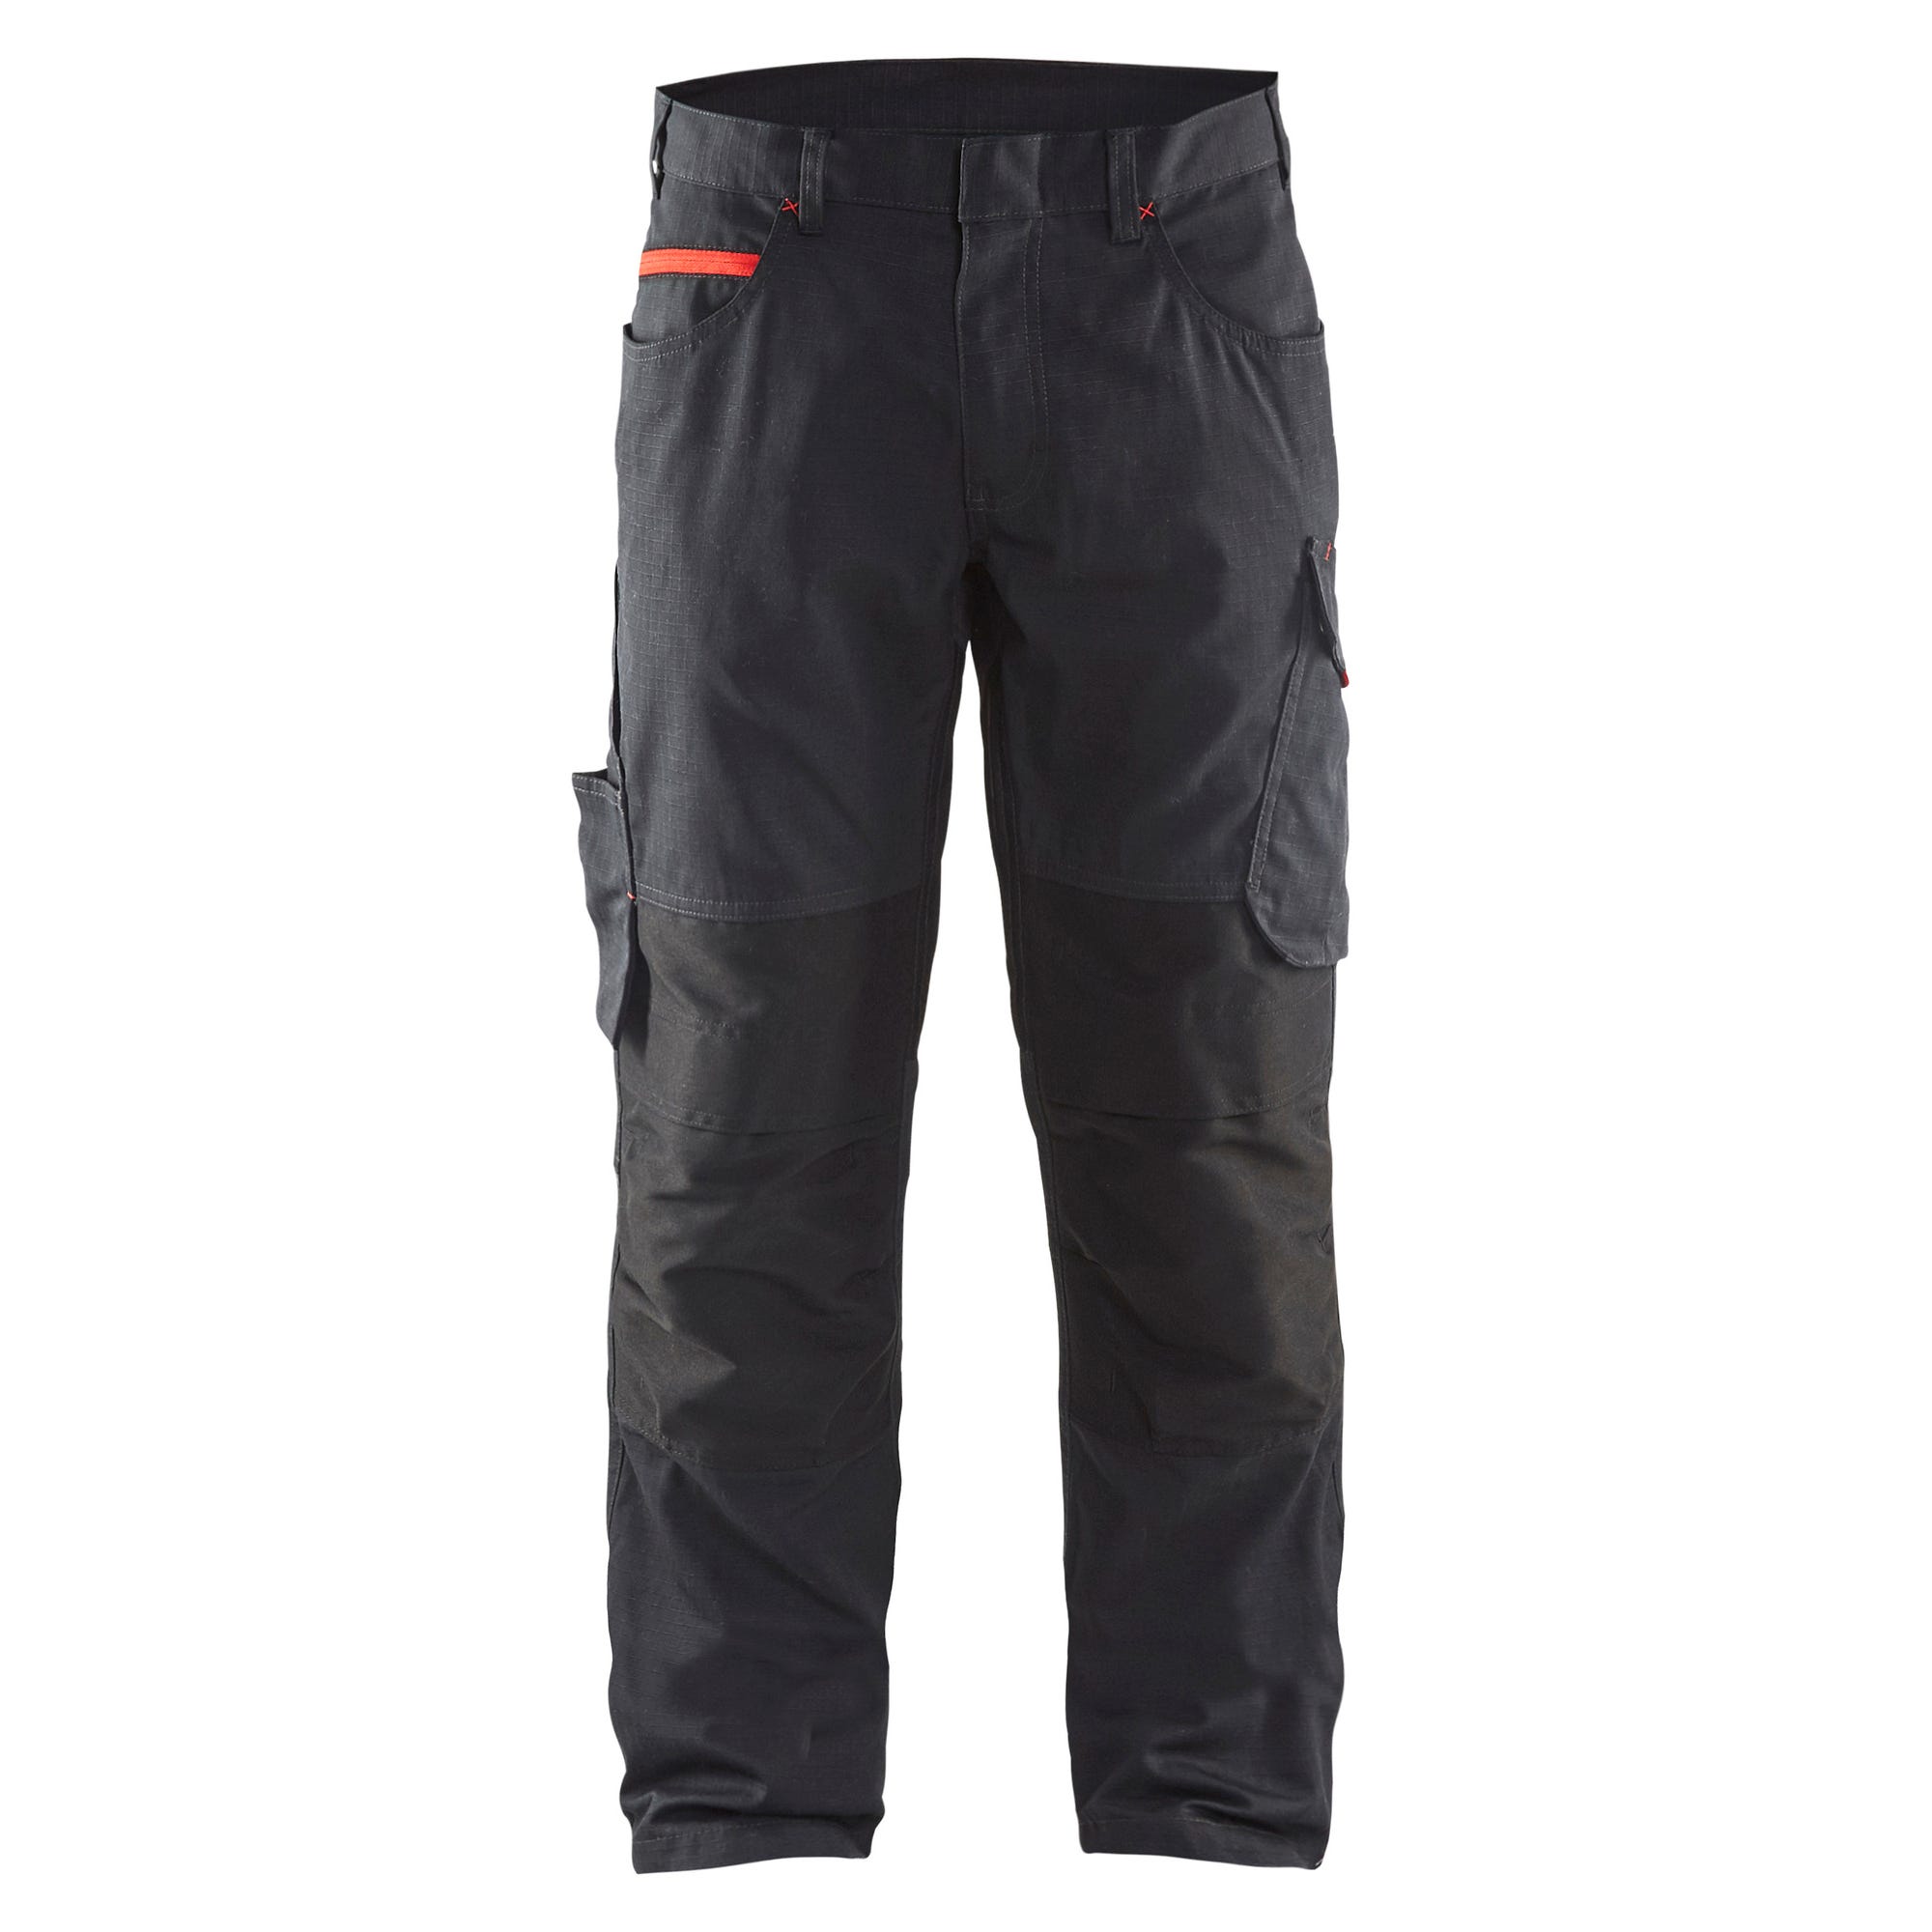 Pantalon de travail stretch Noir/Rouge T.48 1495 - BLAKLADER 0